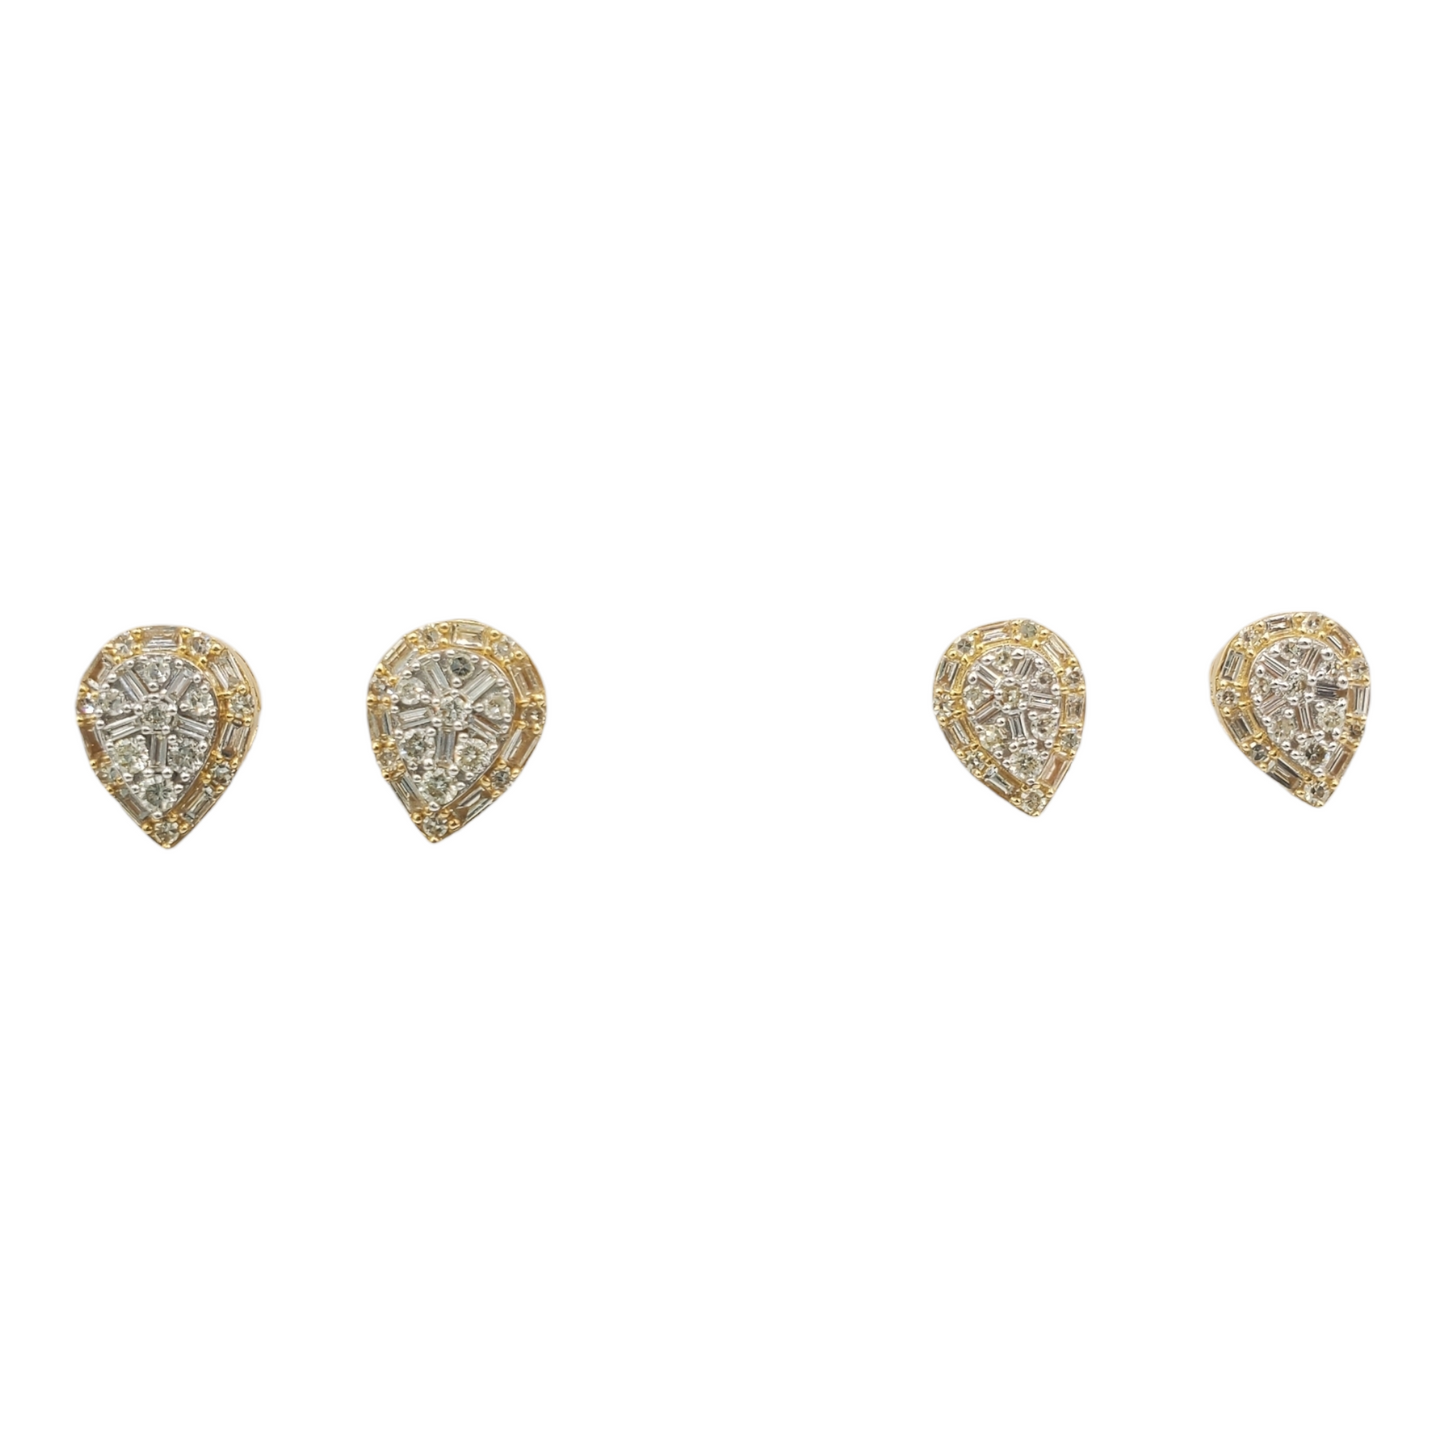 14k Gold Baguette Diamond Tear Drop Earrings #25561